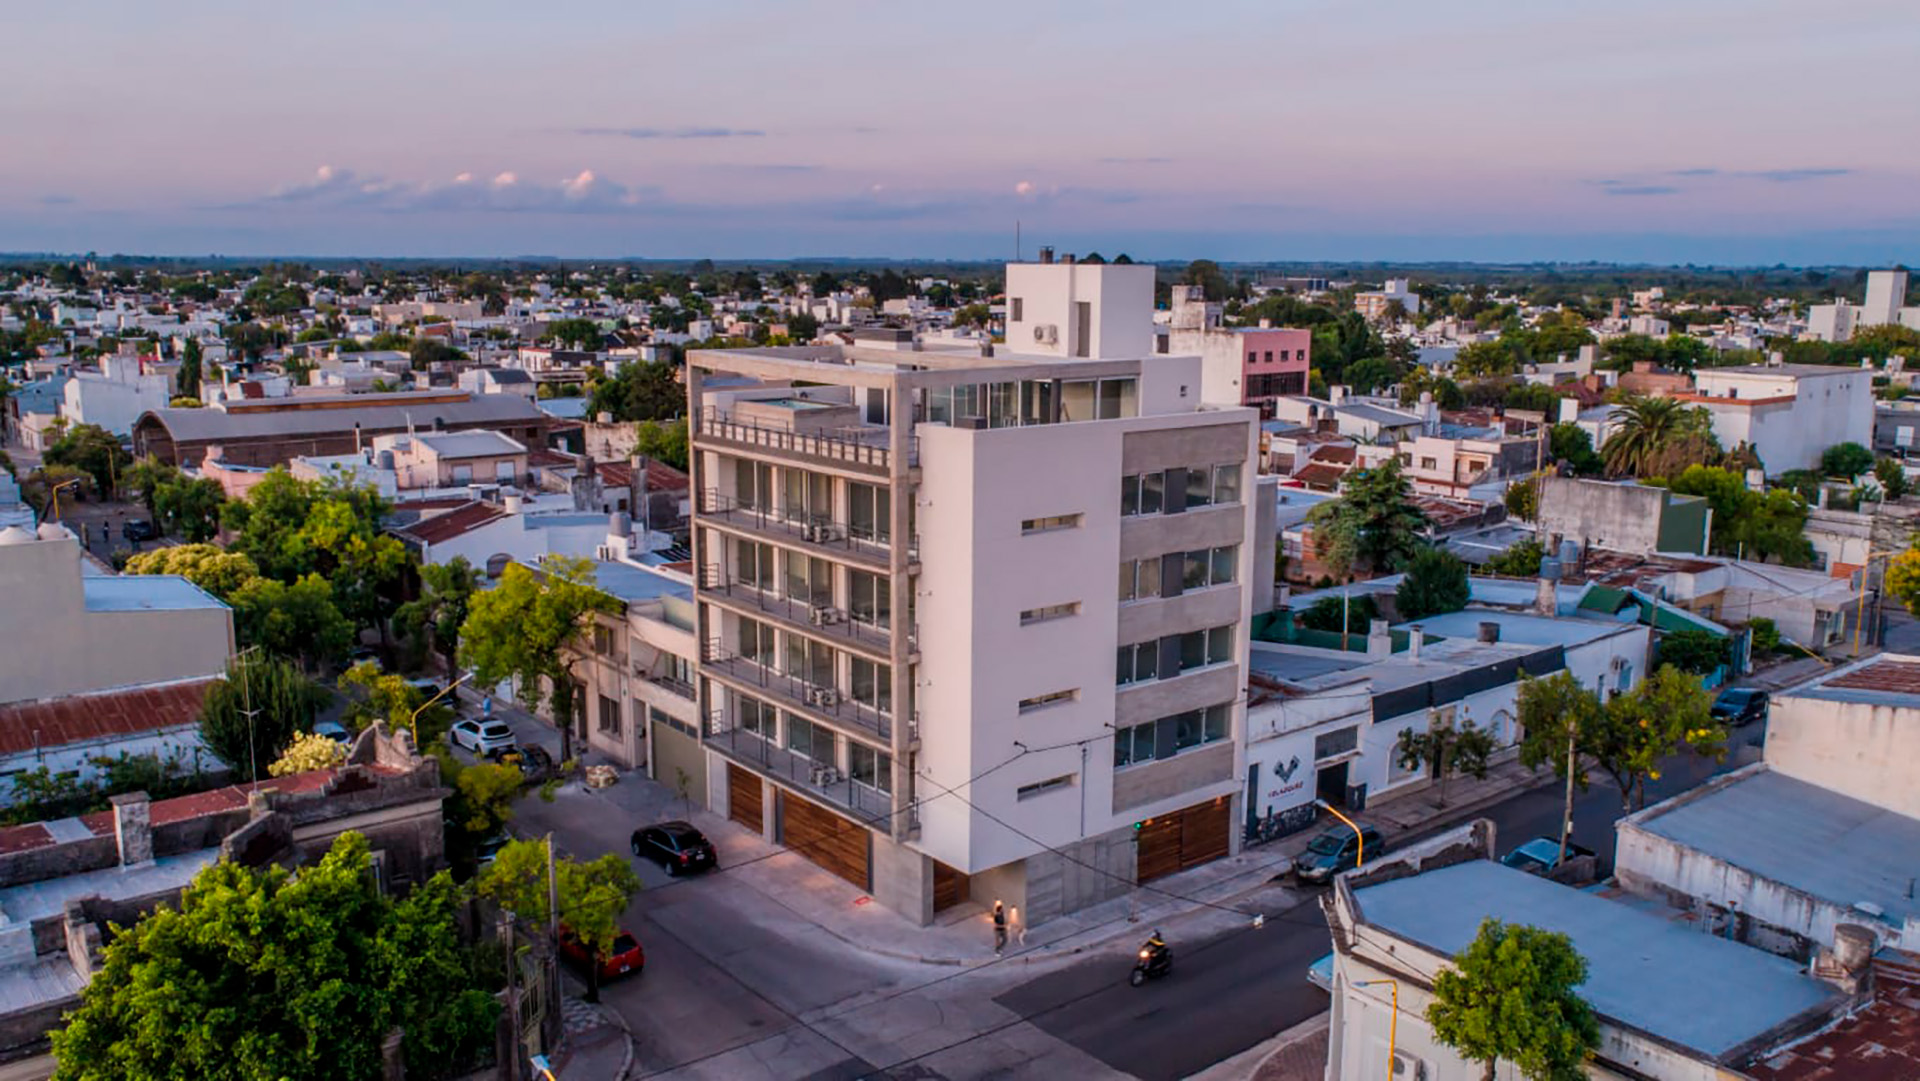 Neyra e Ituzaingó, una esquina de Gualeguaychú, actualmente según los expertos del sector inmobiliario con las viviendas disponibles en alquiler sólo se podría cubrir el 10% de la demanda